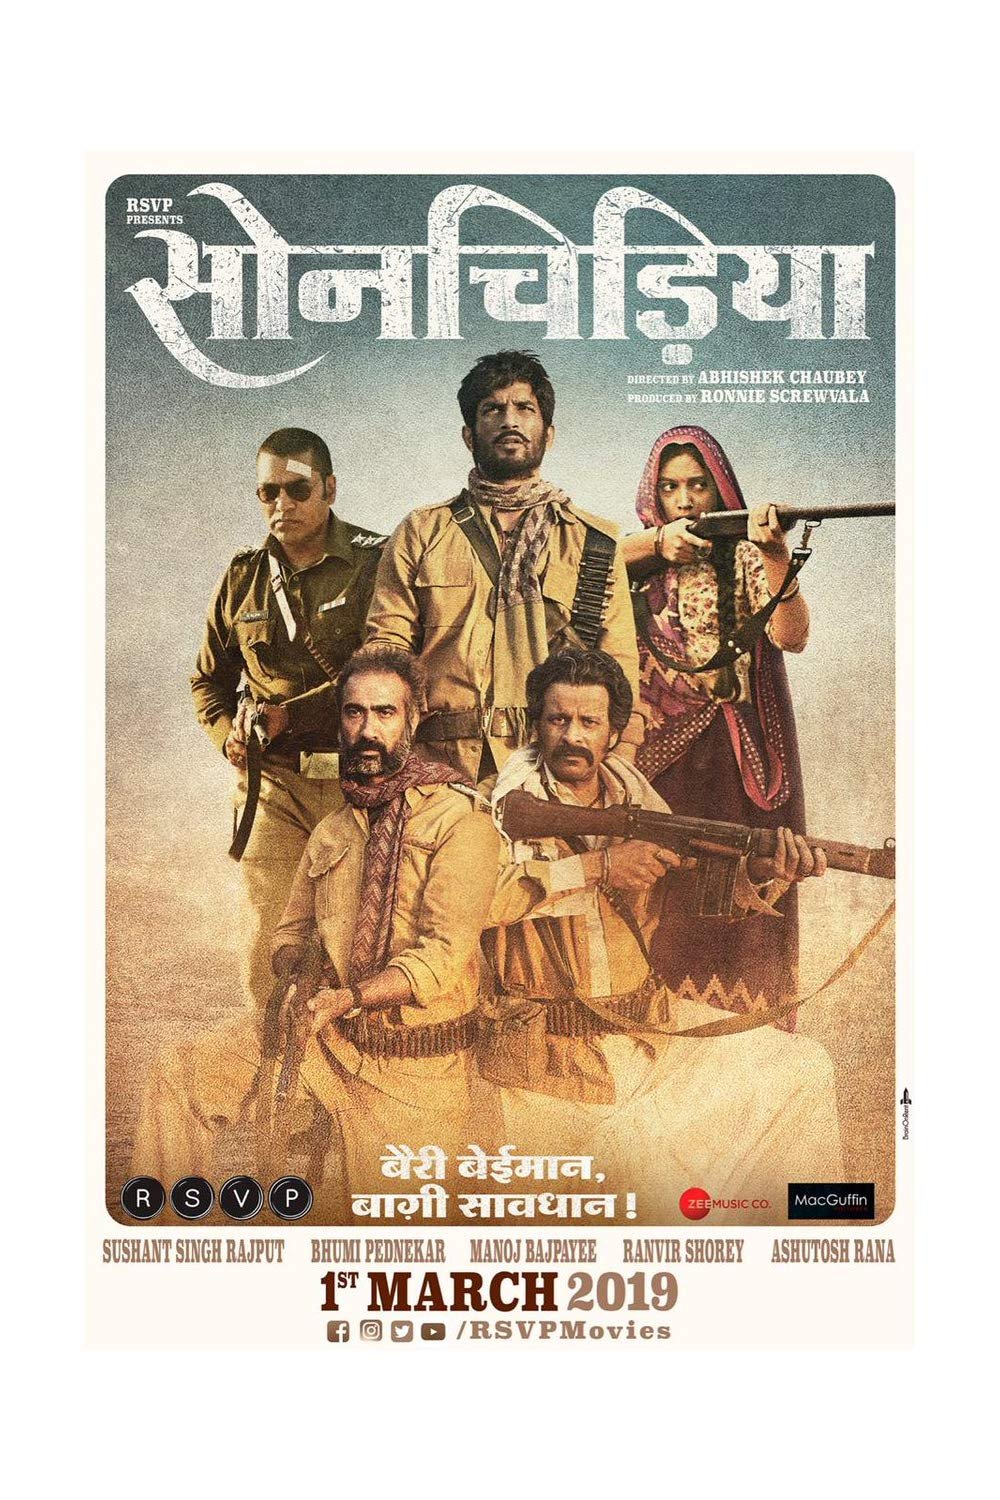 Poster of the movie Sonchiriya